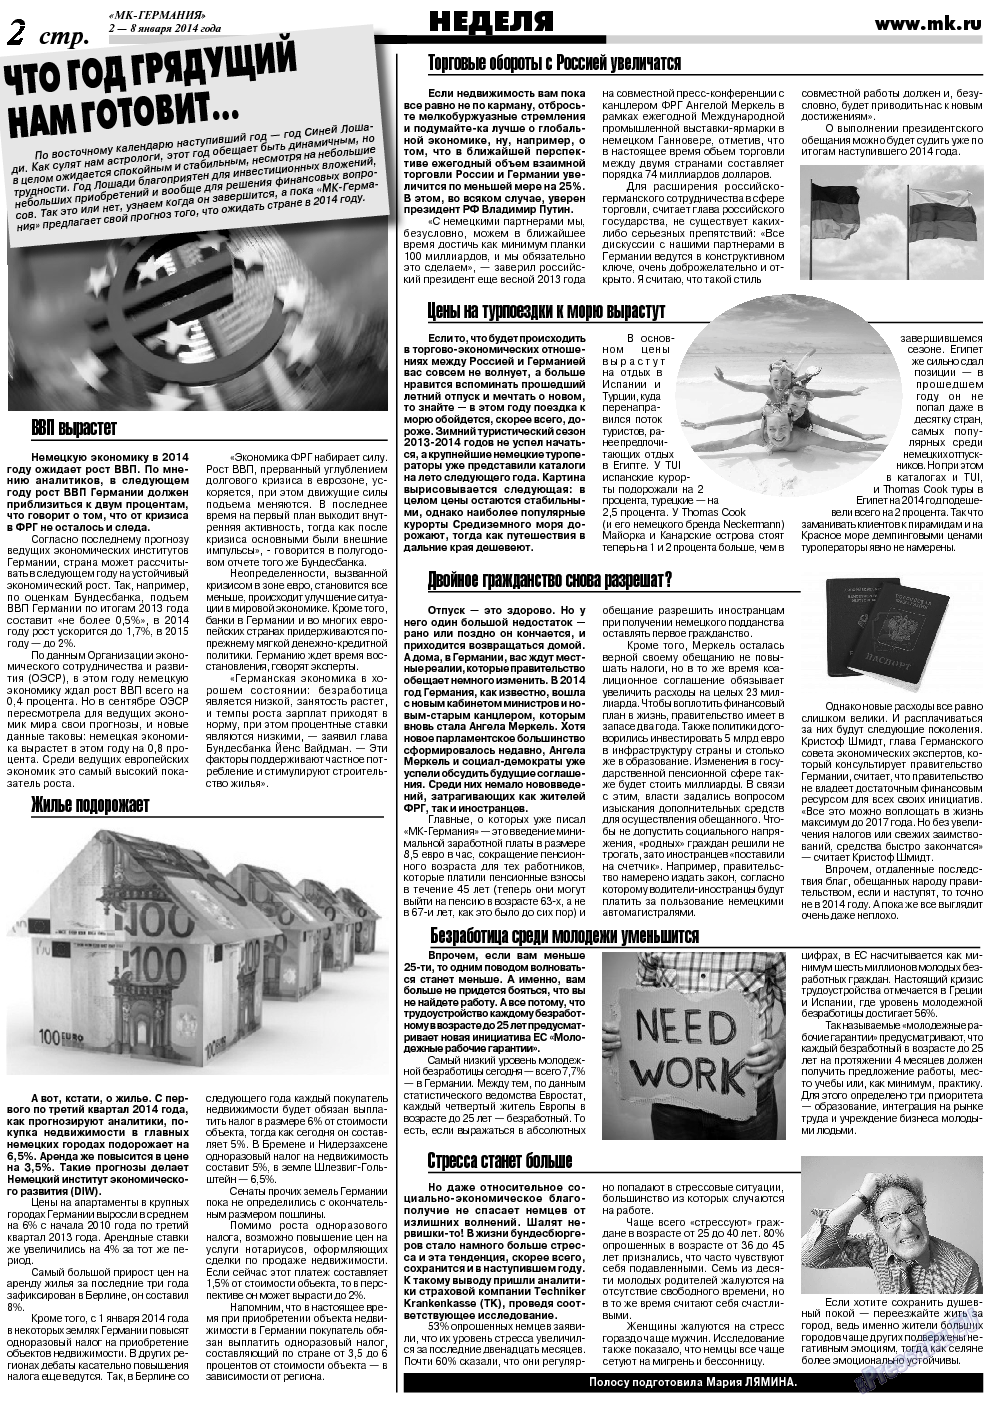 МК-Германия (газета). 2014 год, номер 1, стр. 2